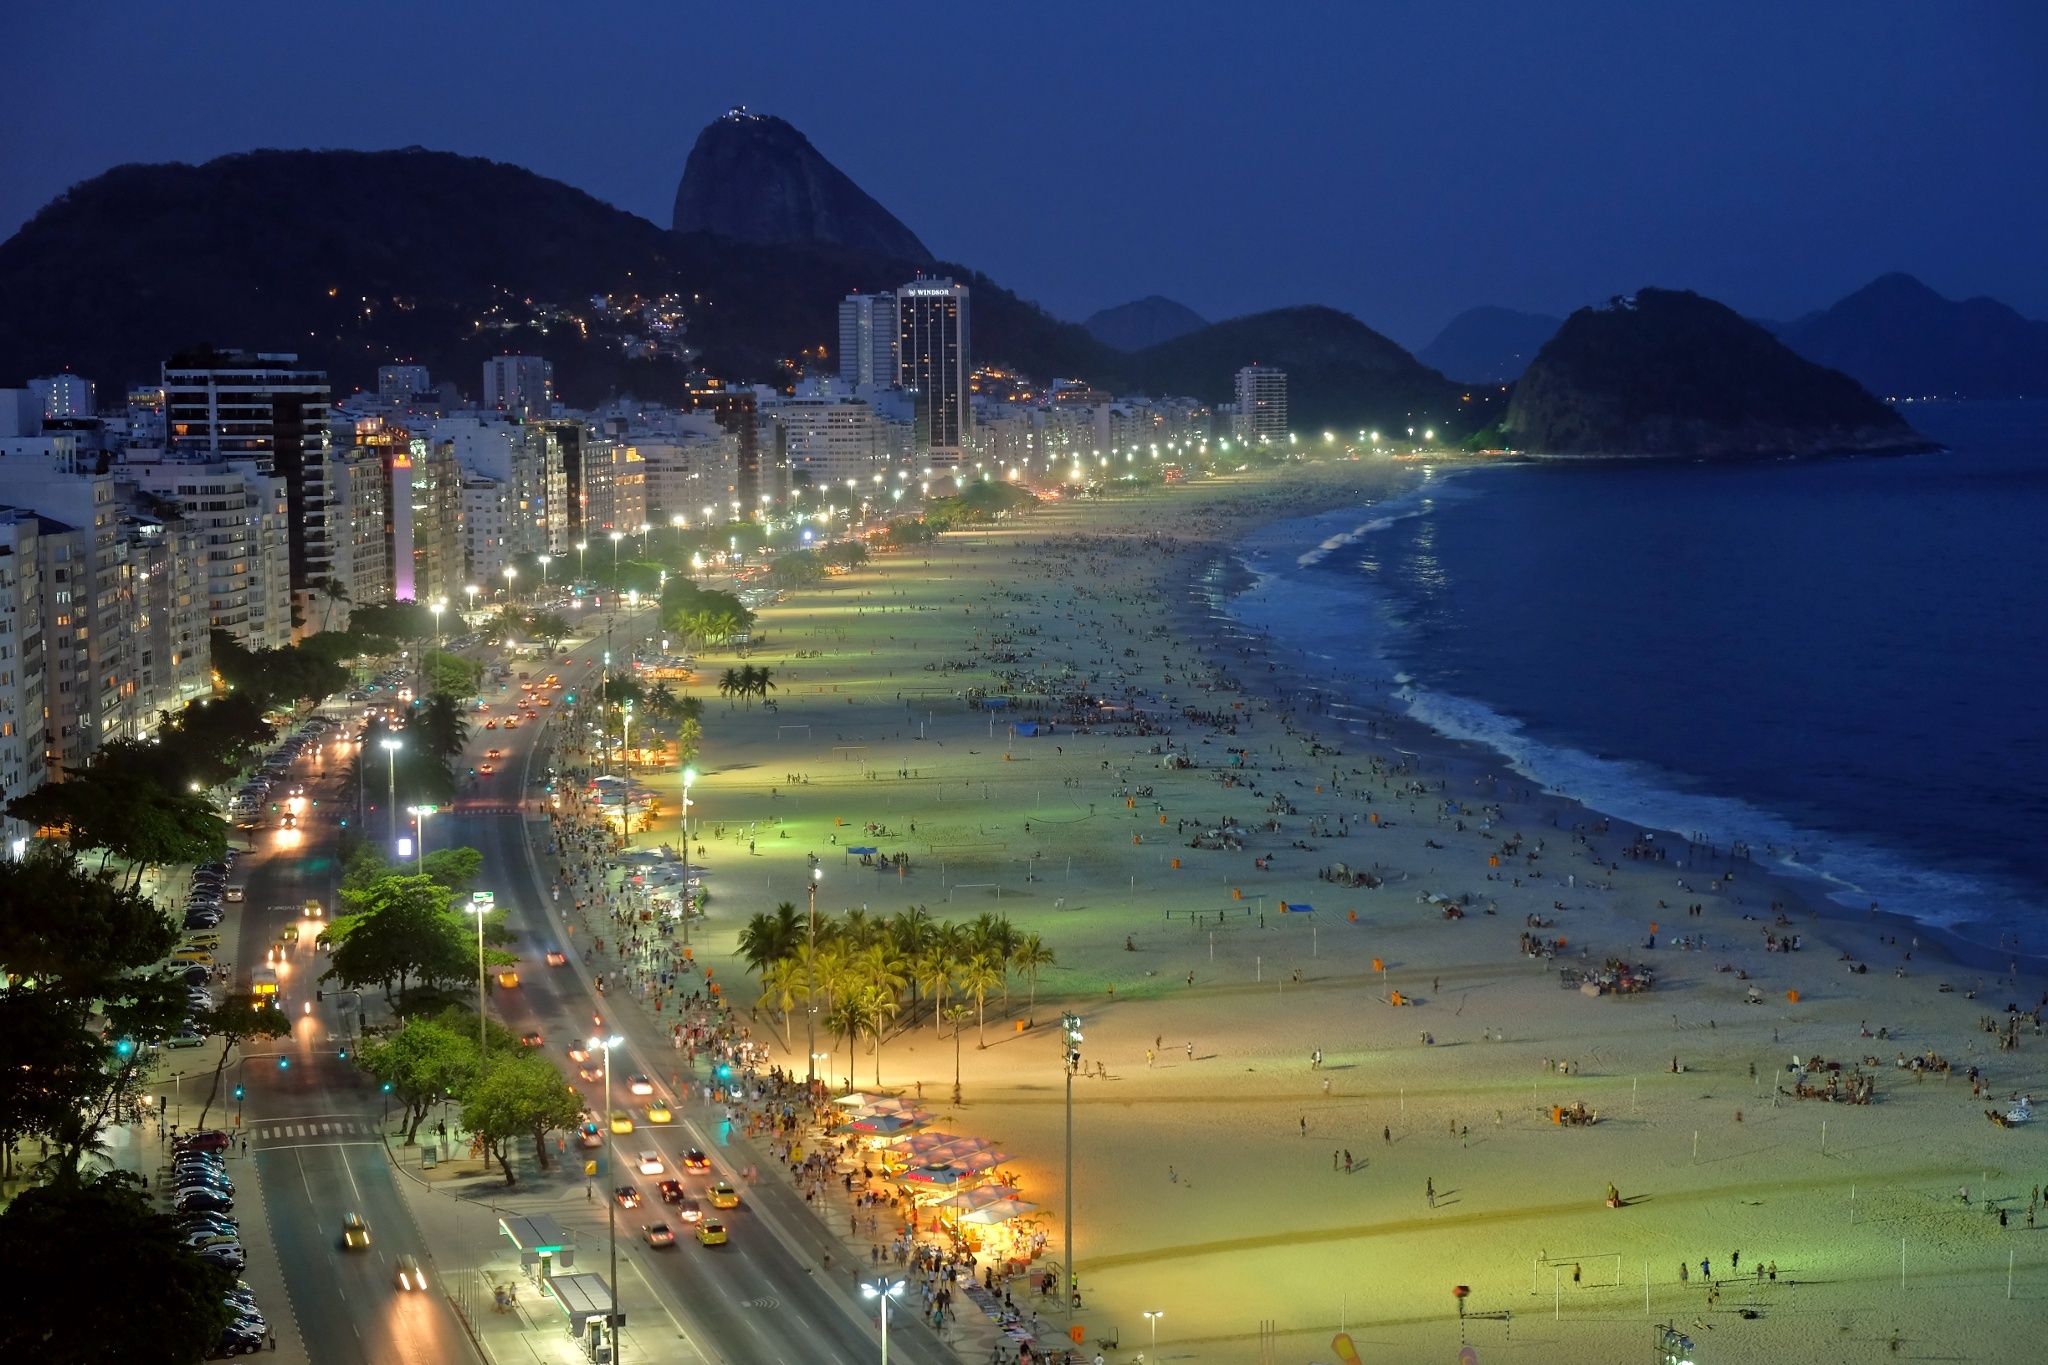 Пляж Копакабана в Рио-де-Жанейро